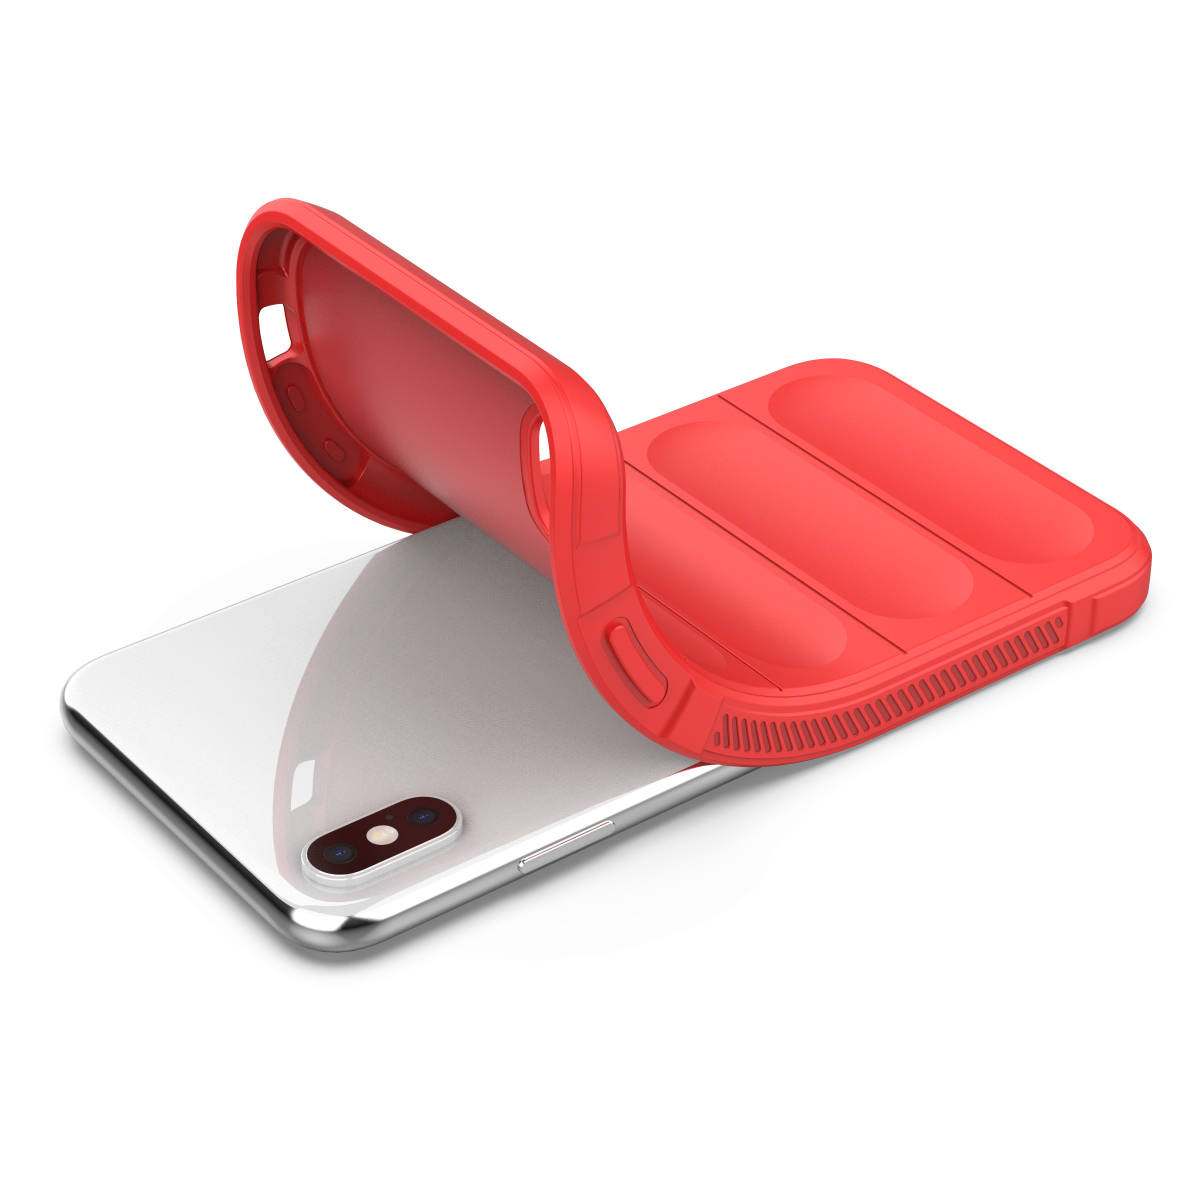 C ликвидация запасов красный iPhone XS Max кейс покрытие iPhone корпус защита .. вооруженные силы США крепкий ударопрочный супер крепкий soft силикон I ho n Apple 